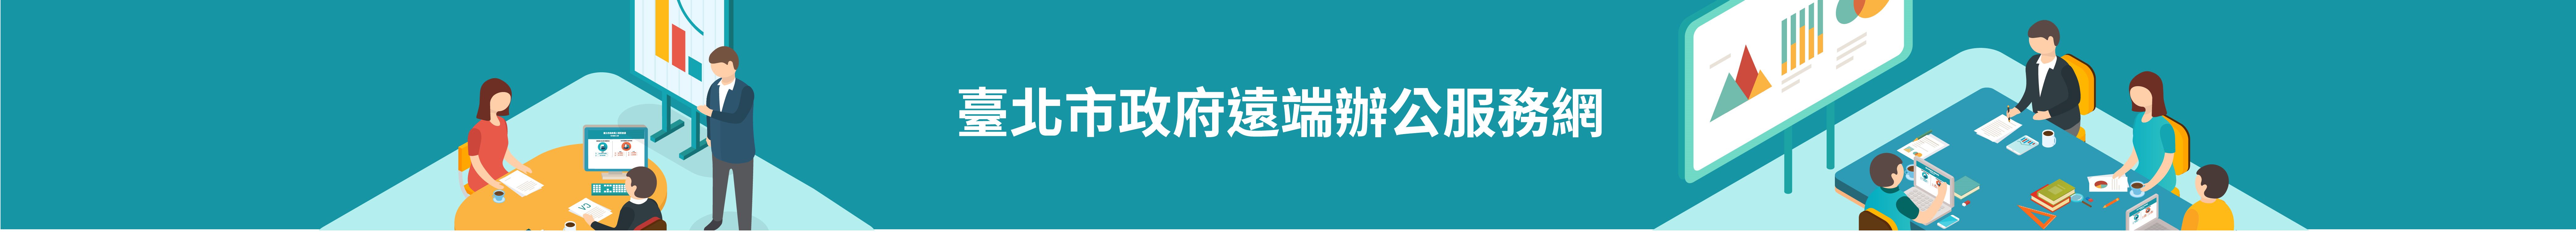 臺北市政府員工視訊會議電子簽到入口網